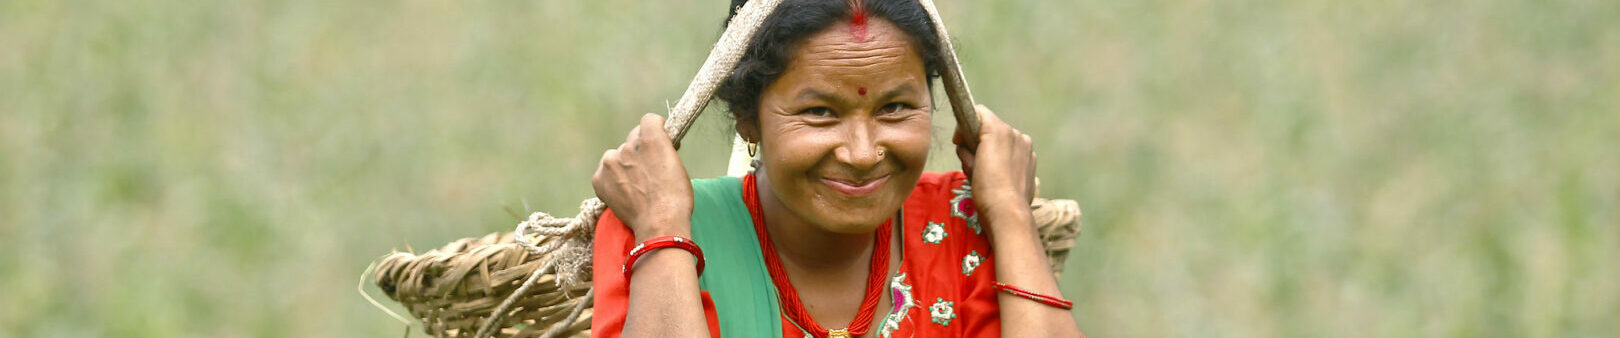 Nepal, Bäuerin des gemeinsamen Programms für Bäuerinnen auf dem Land. Credits: UN Women/Narendra Shrestha